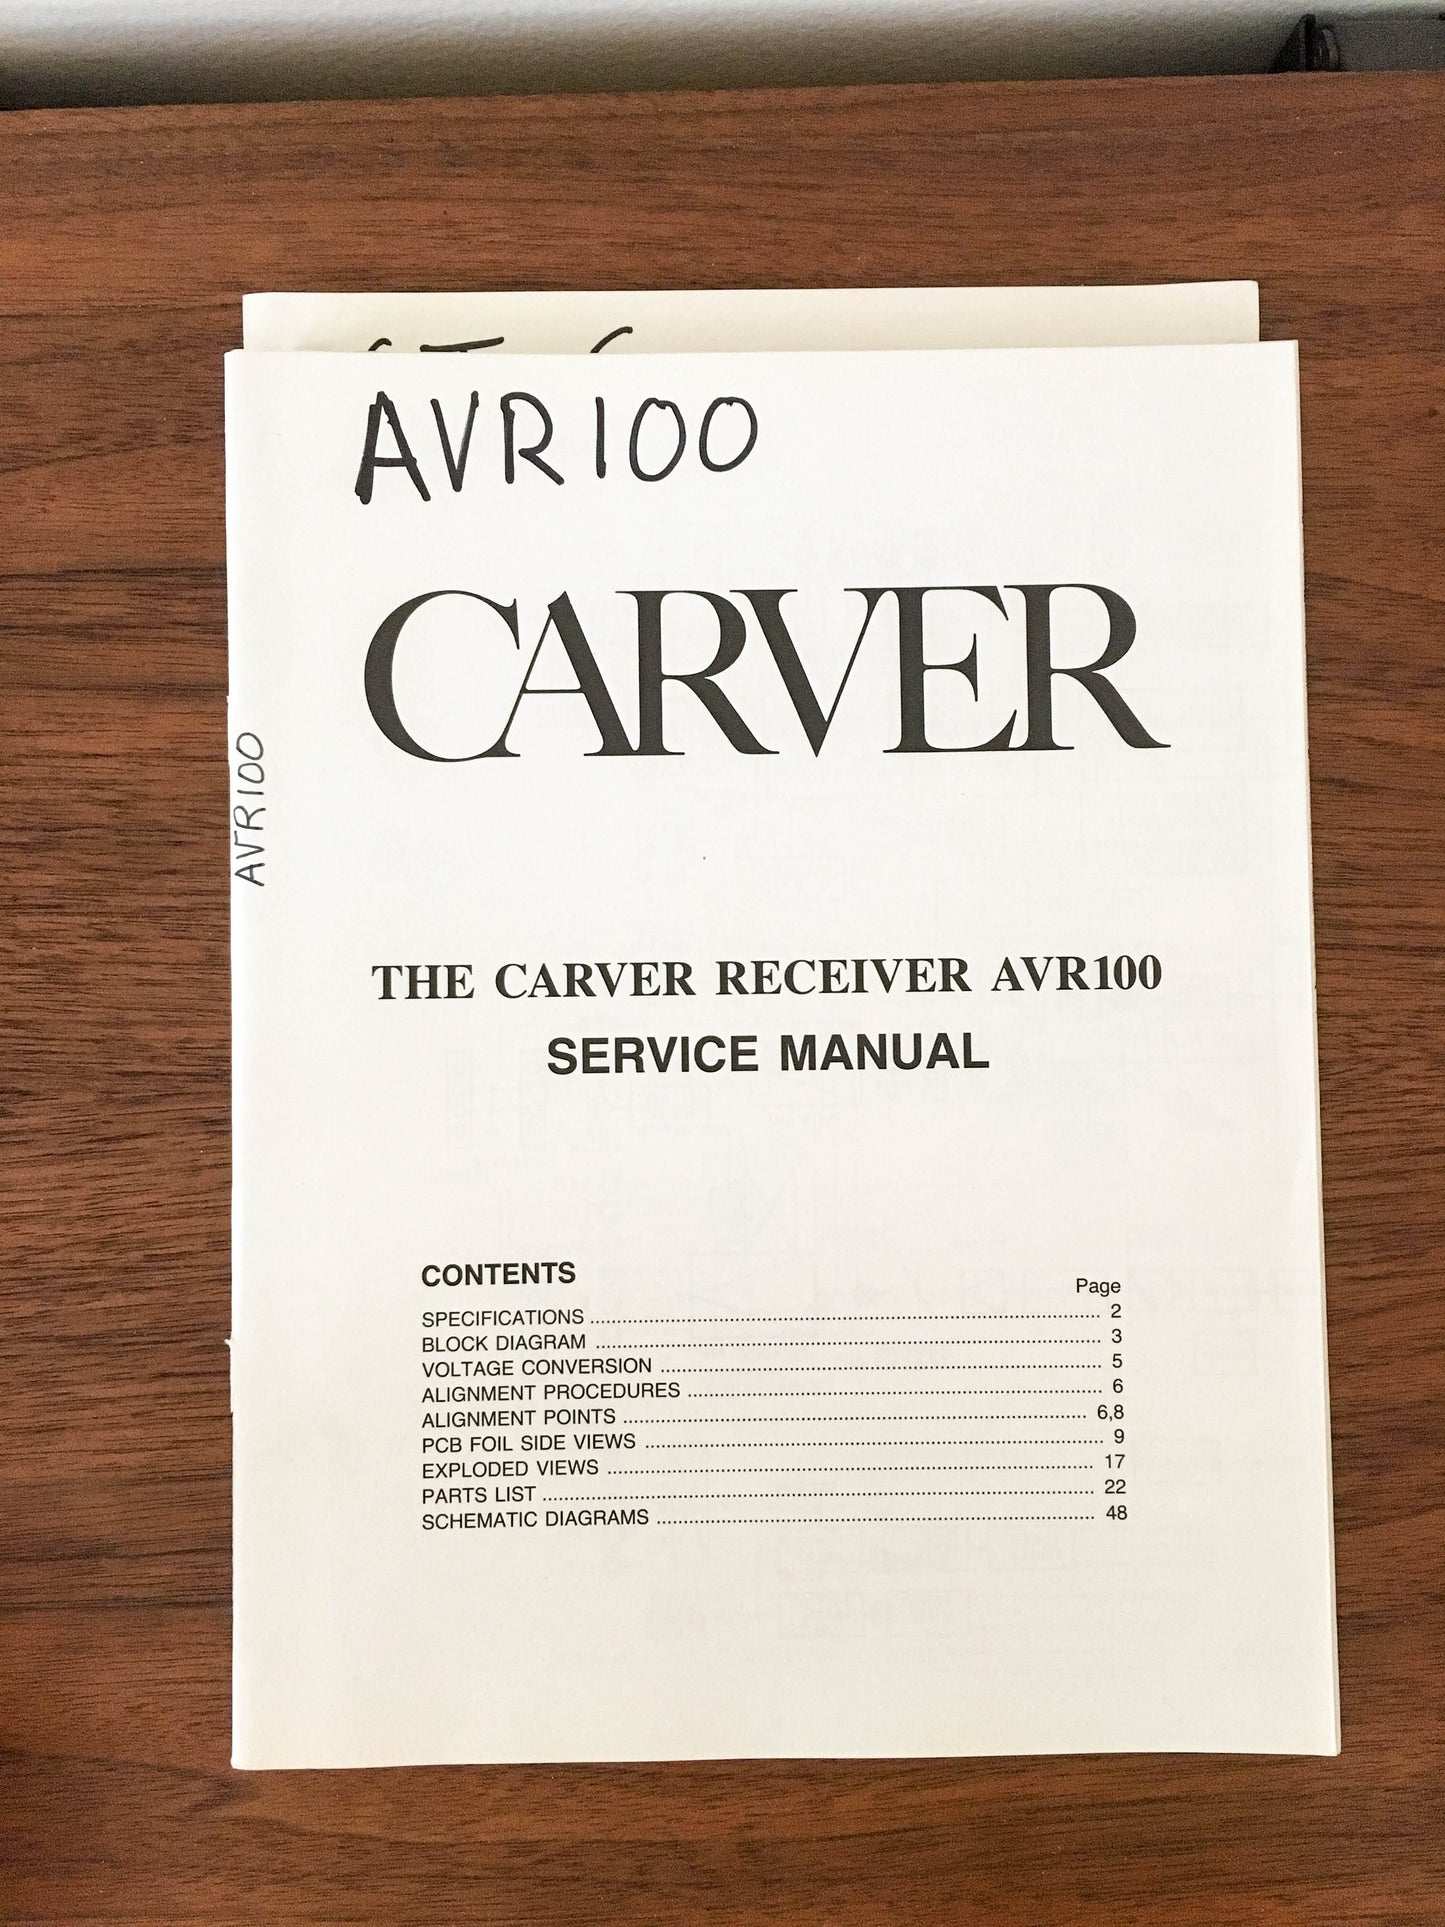 Carver AV-100 Receiver Service Manual *Original*